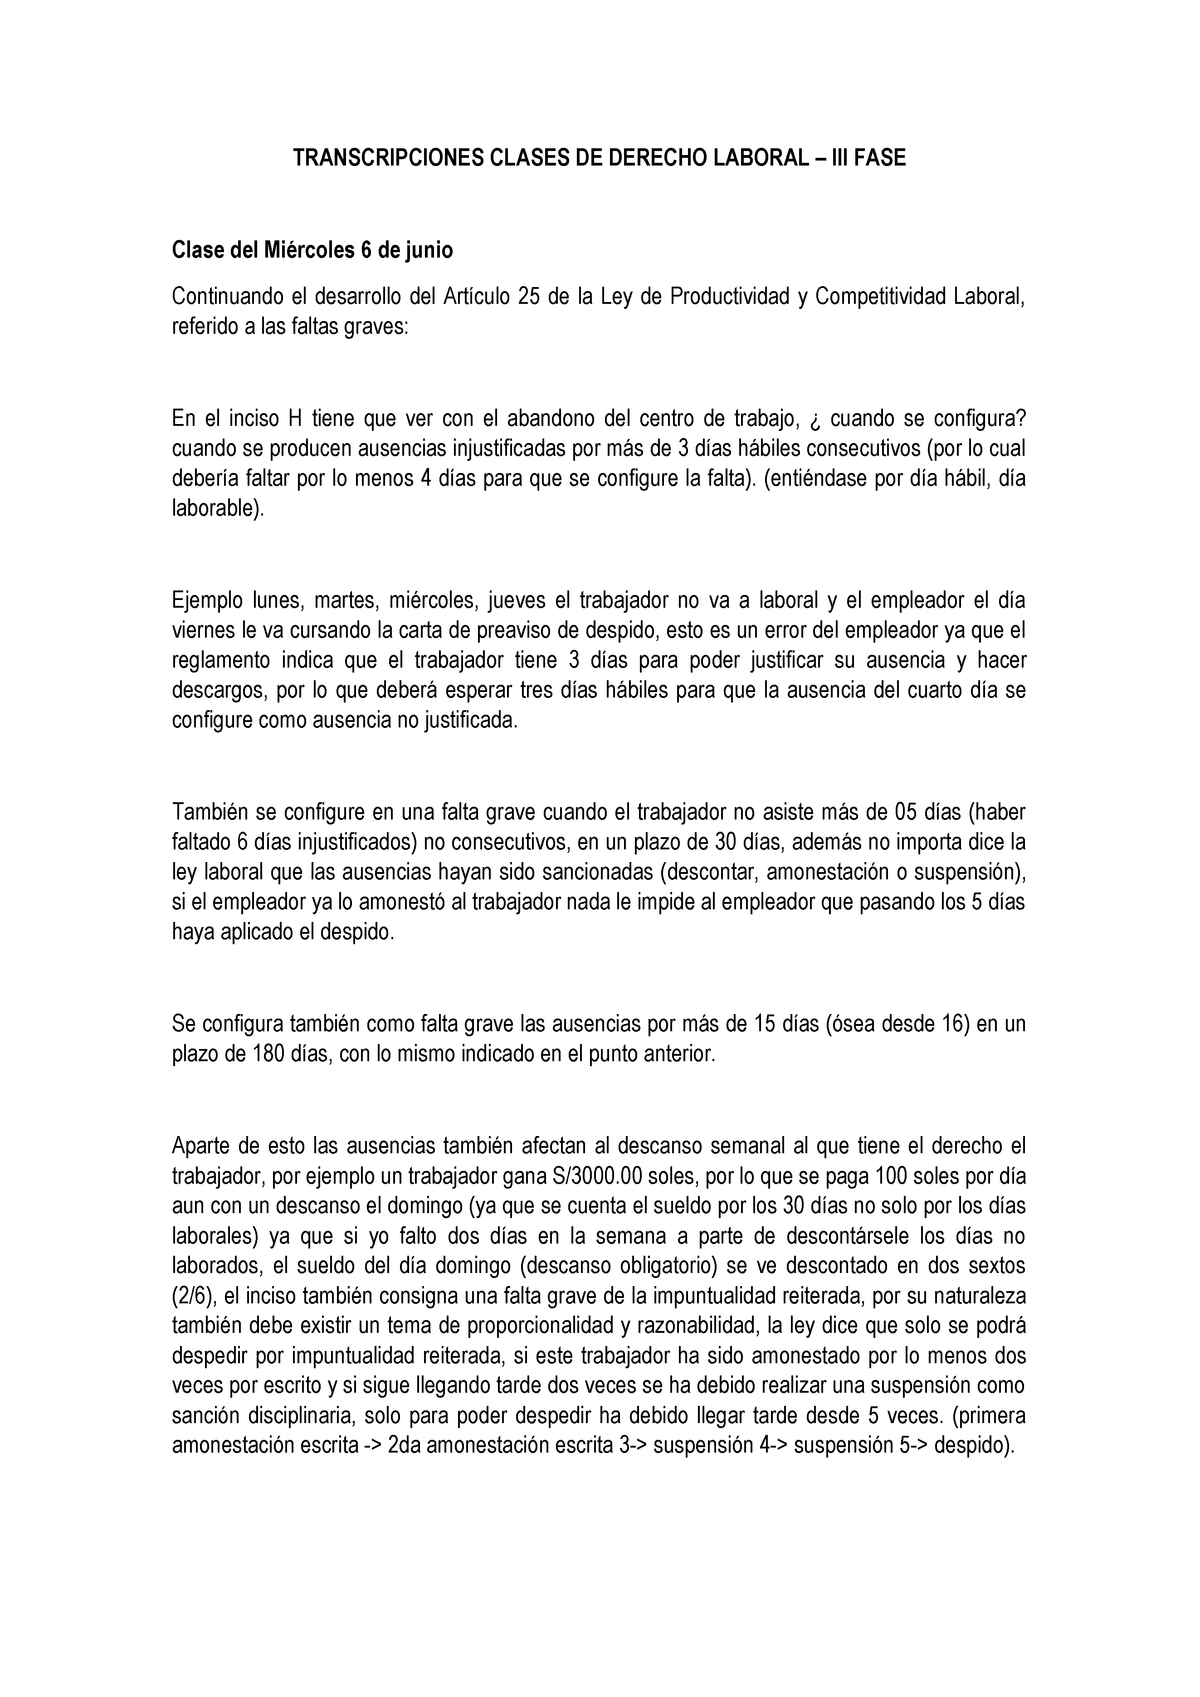 Transcripciones Derecho Laboral Iii Fase Studocu